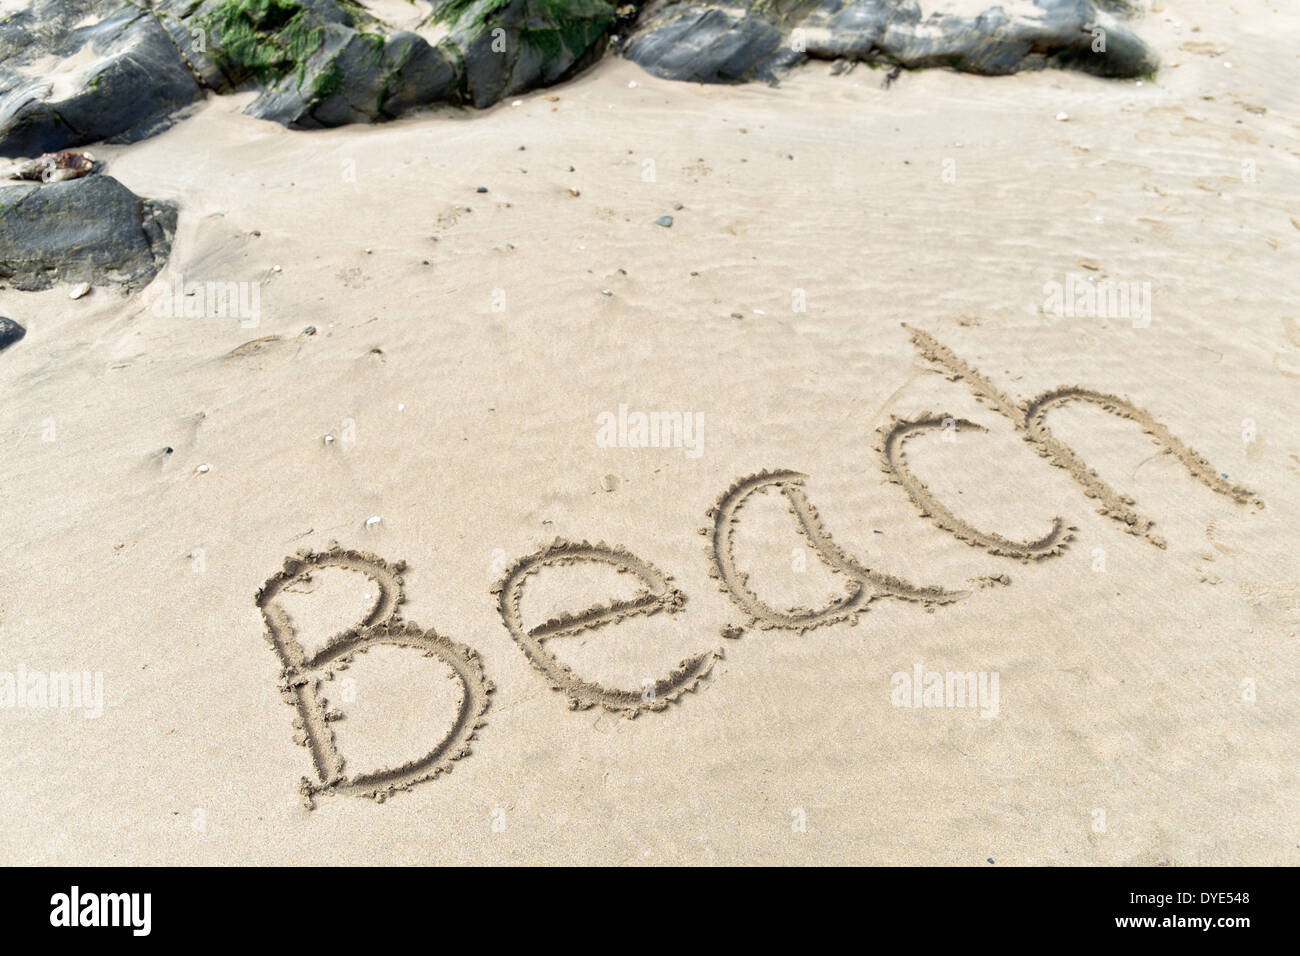 Lettere di grandi dimensioni l'ortografia della parola scritta sulla spiaggia in sabbia da rocce utilizzando su un soleggiato, riva sabbiosa Foto Stock